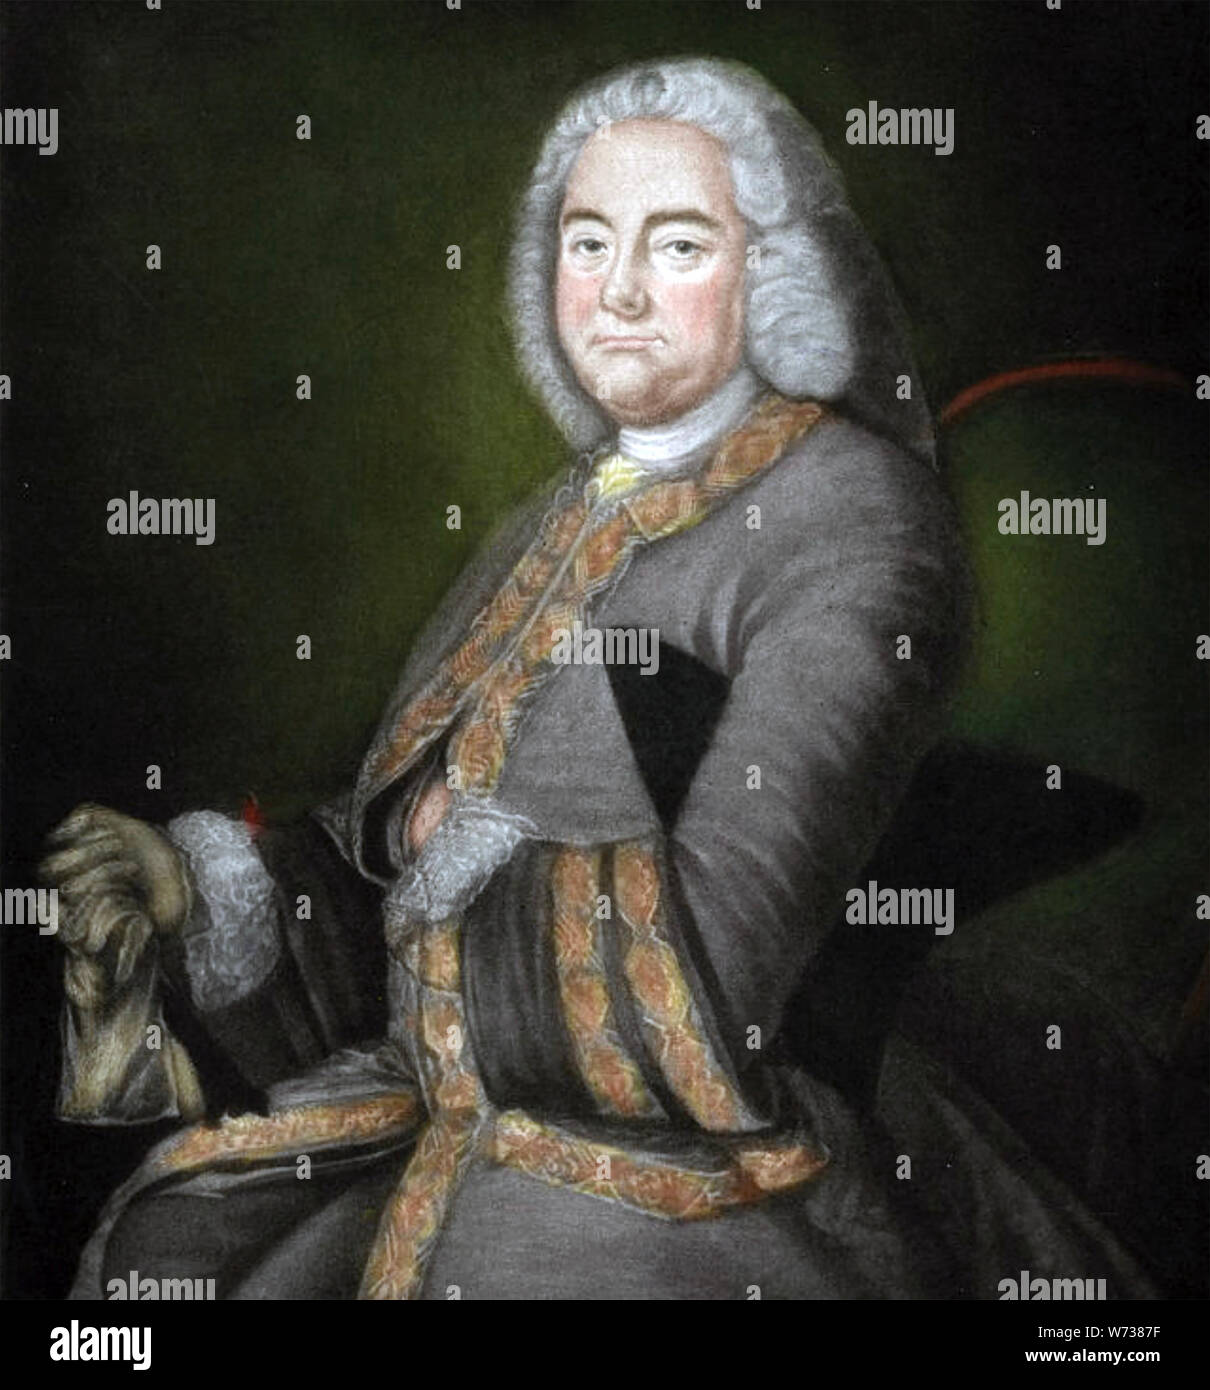 GEORGE FRIDERIC HANDEL (1685-1759) del compositor barroco germano-británico Foto de stock